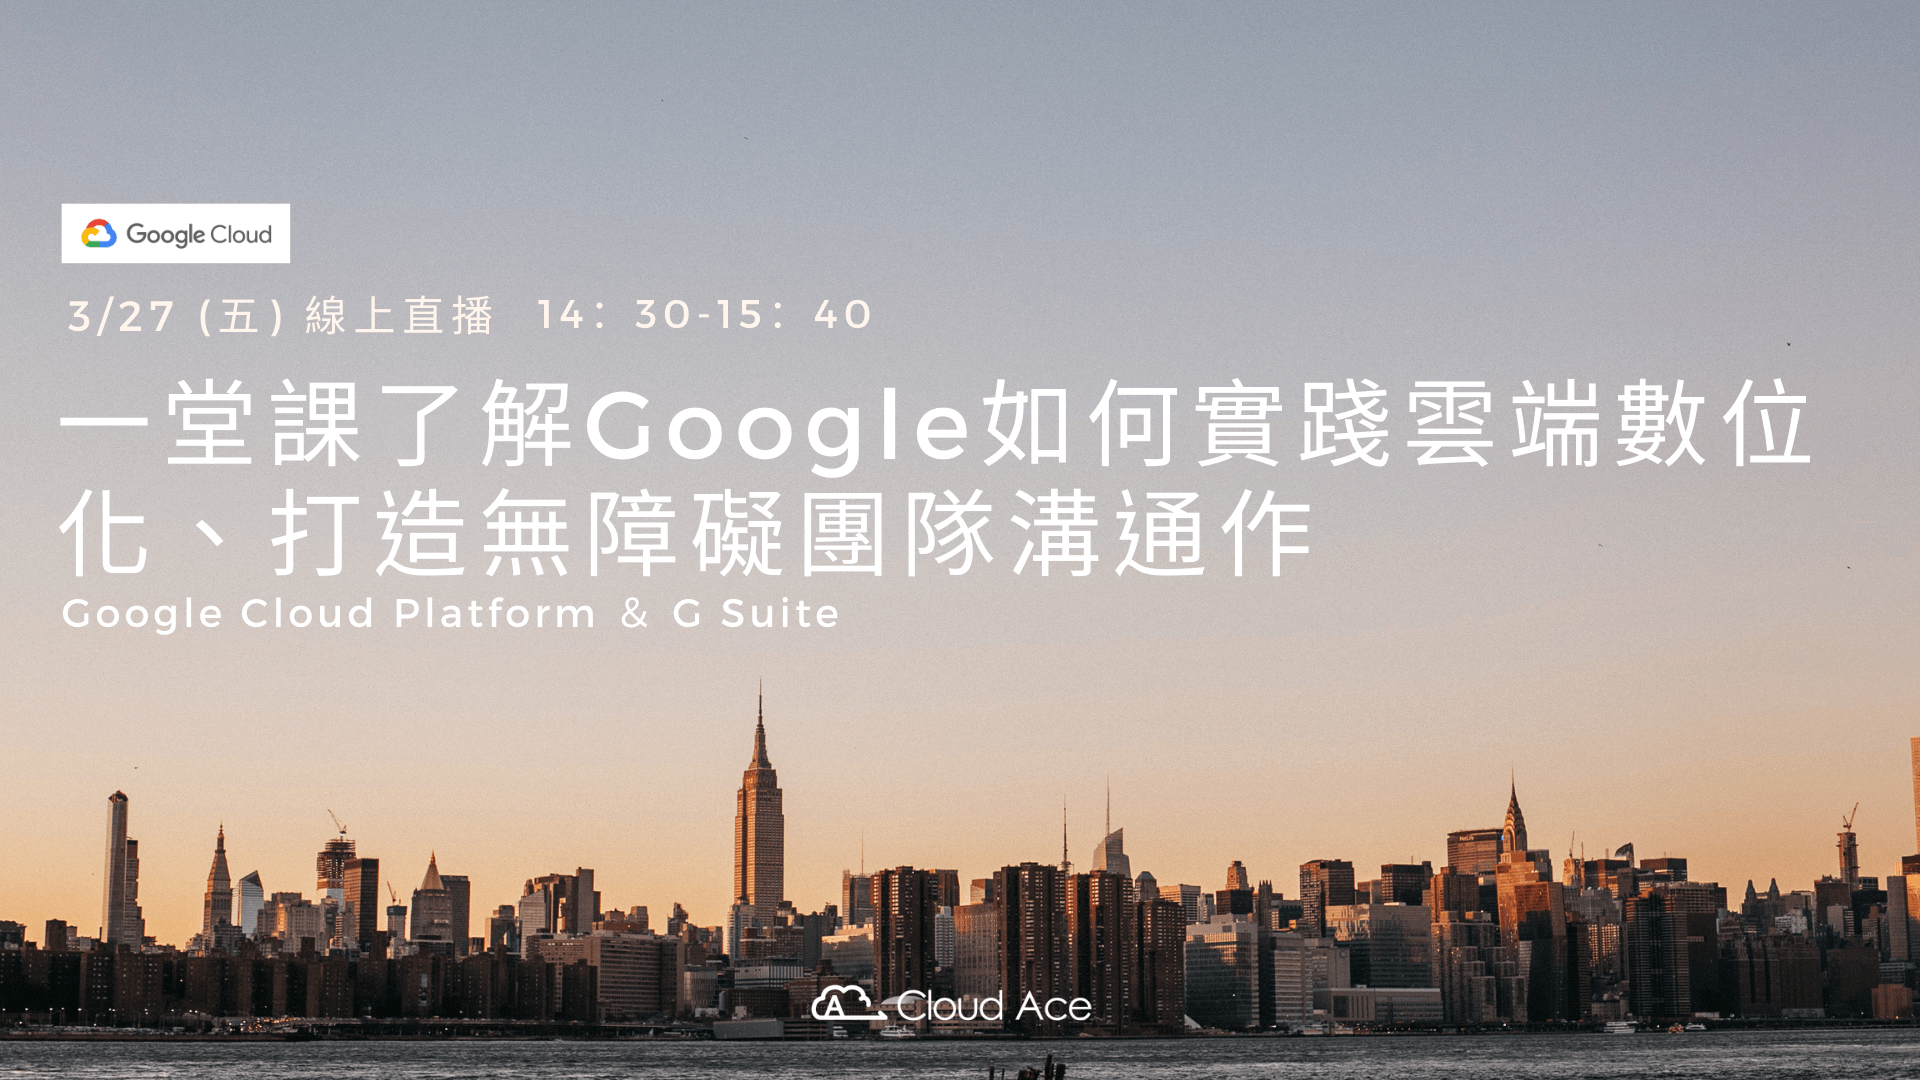 一堂課了解Google如何實踐雲端數位化、打造無障礙團隊溝通作－Google Cloud Platform ＆ G Suite